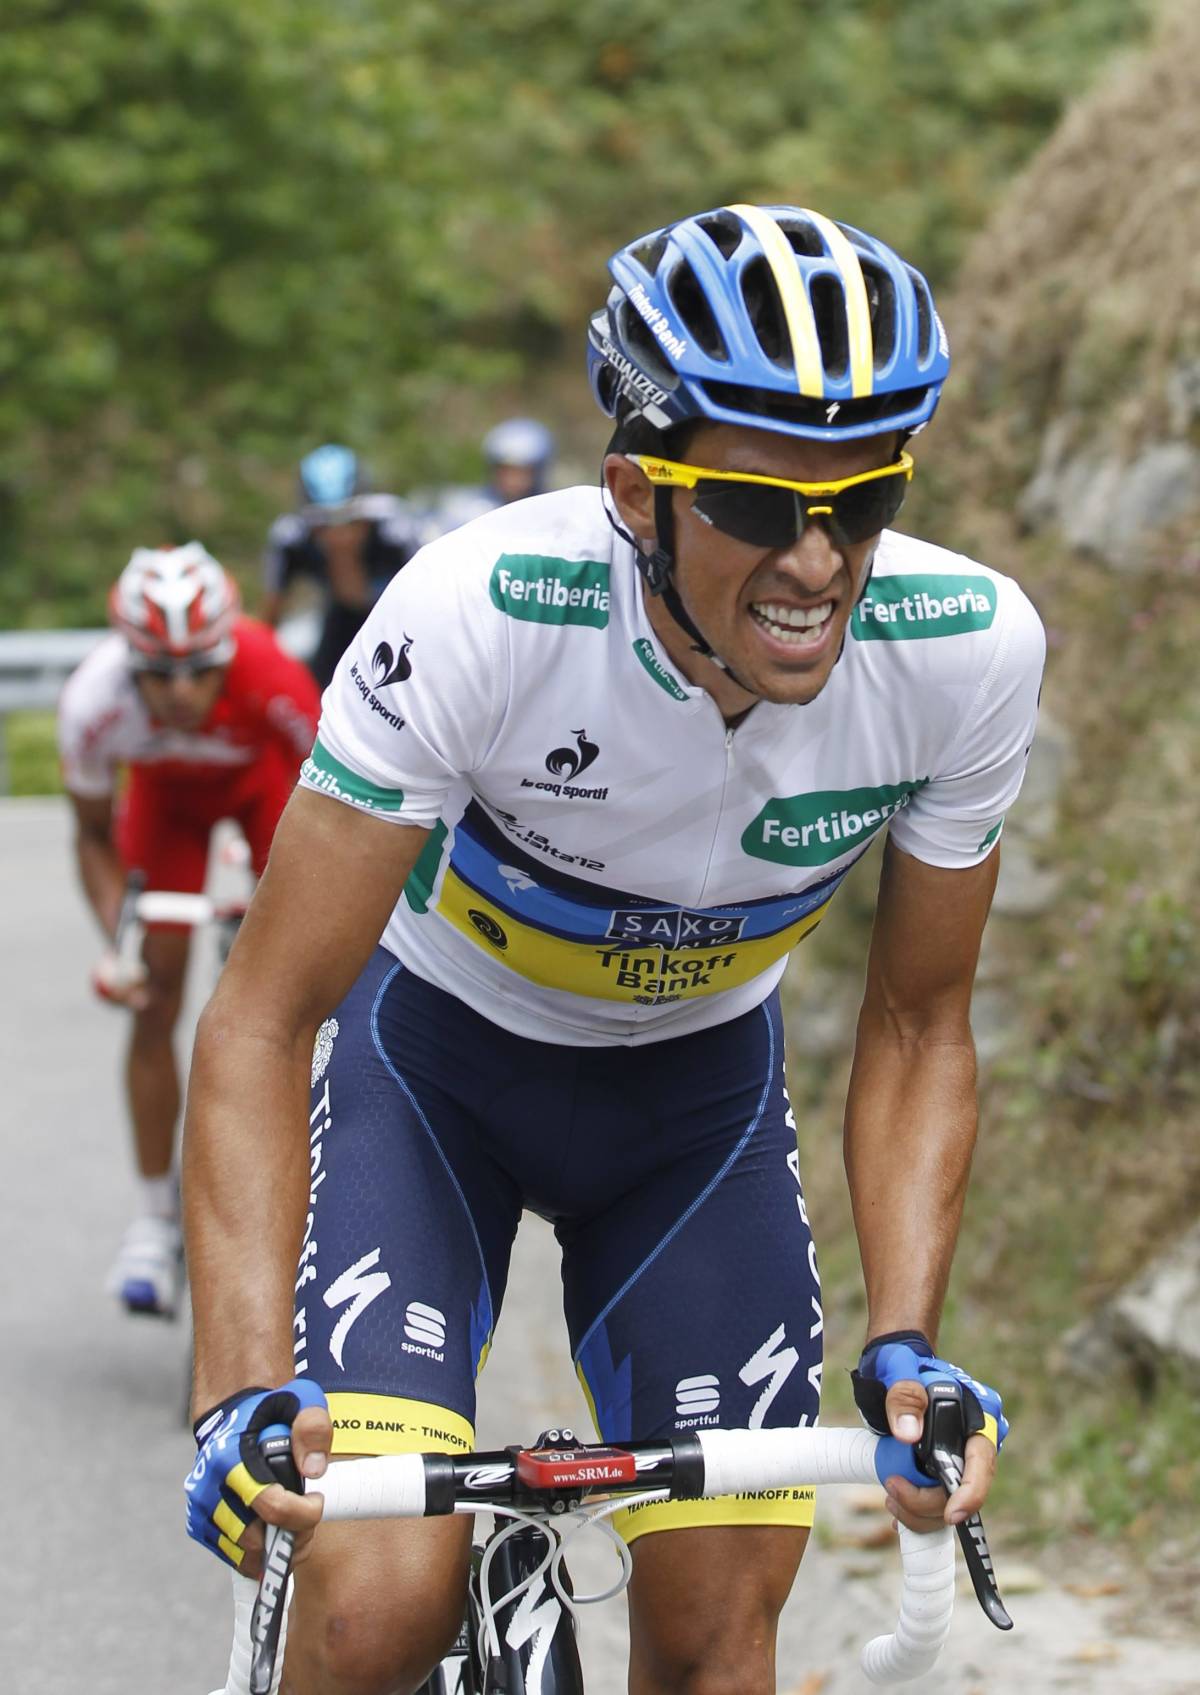 Il ritorno di Contador: in trionfo alla Vuelta